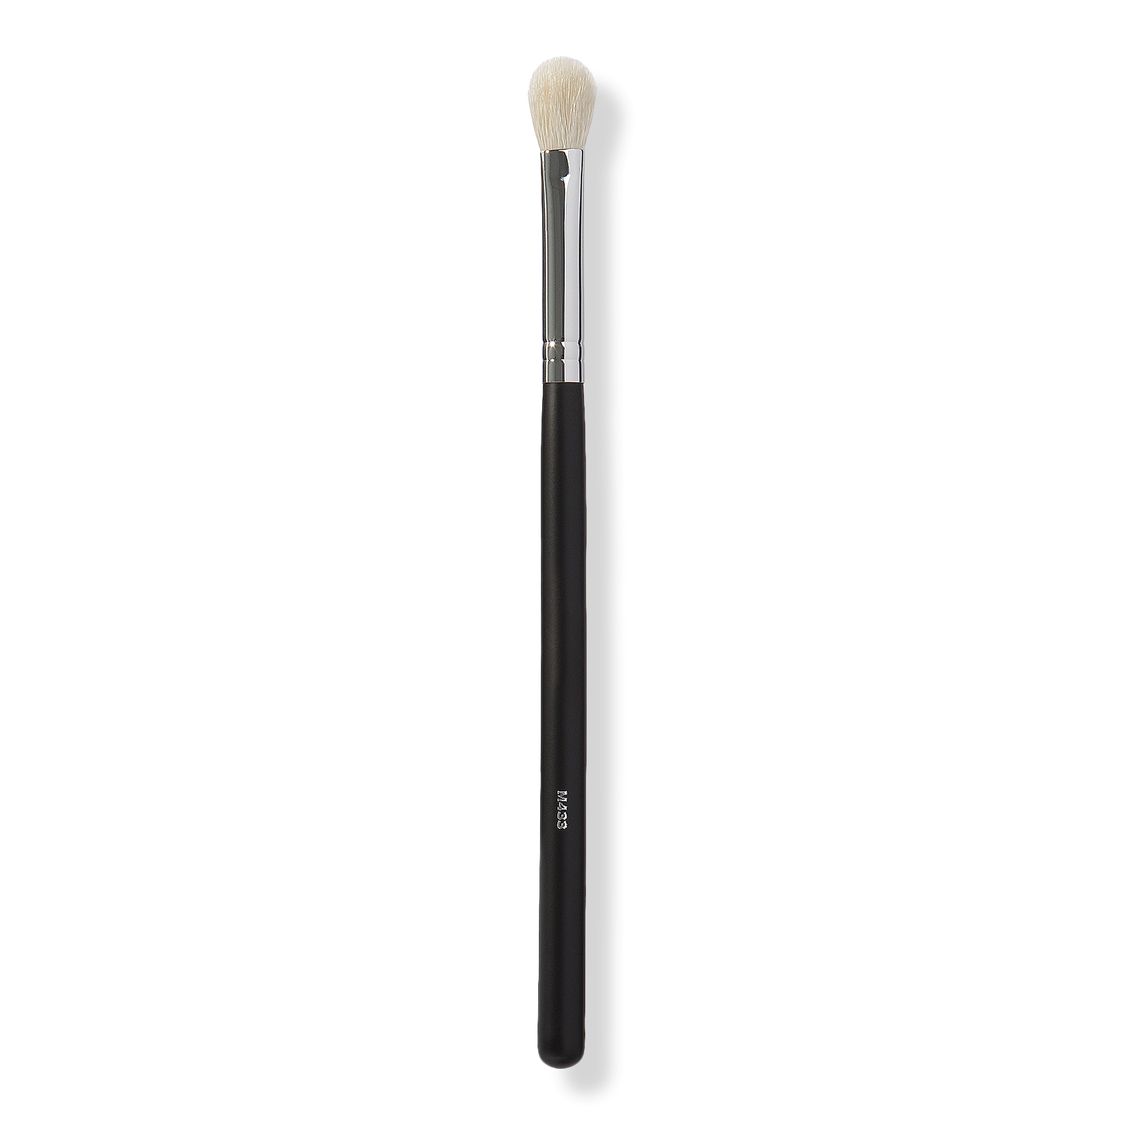 M433 Pro Firm Blending Fluff Brush - Morphe | Ulta Beauty | Ulta